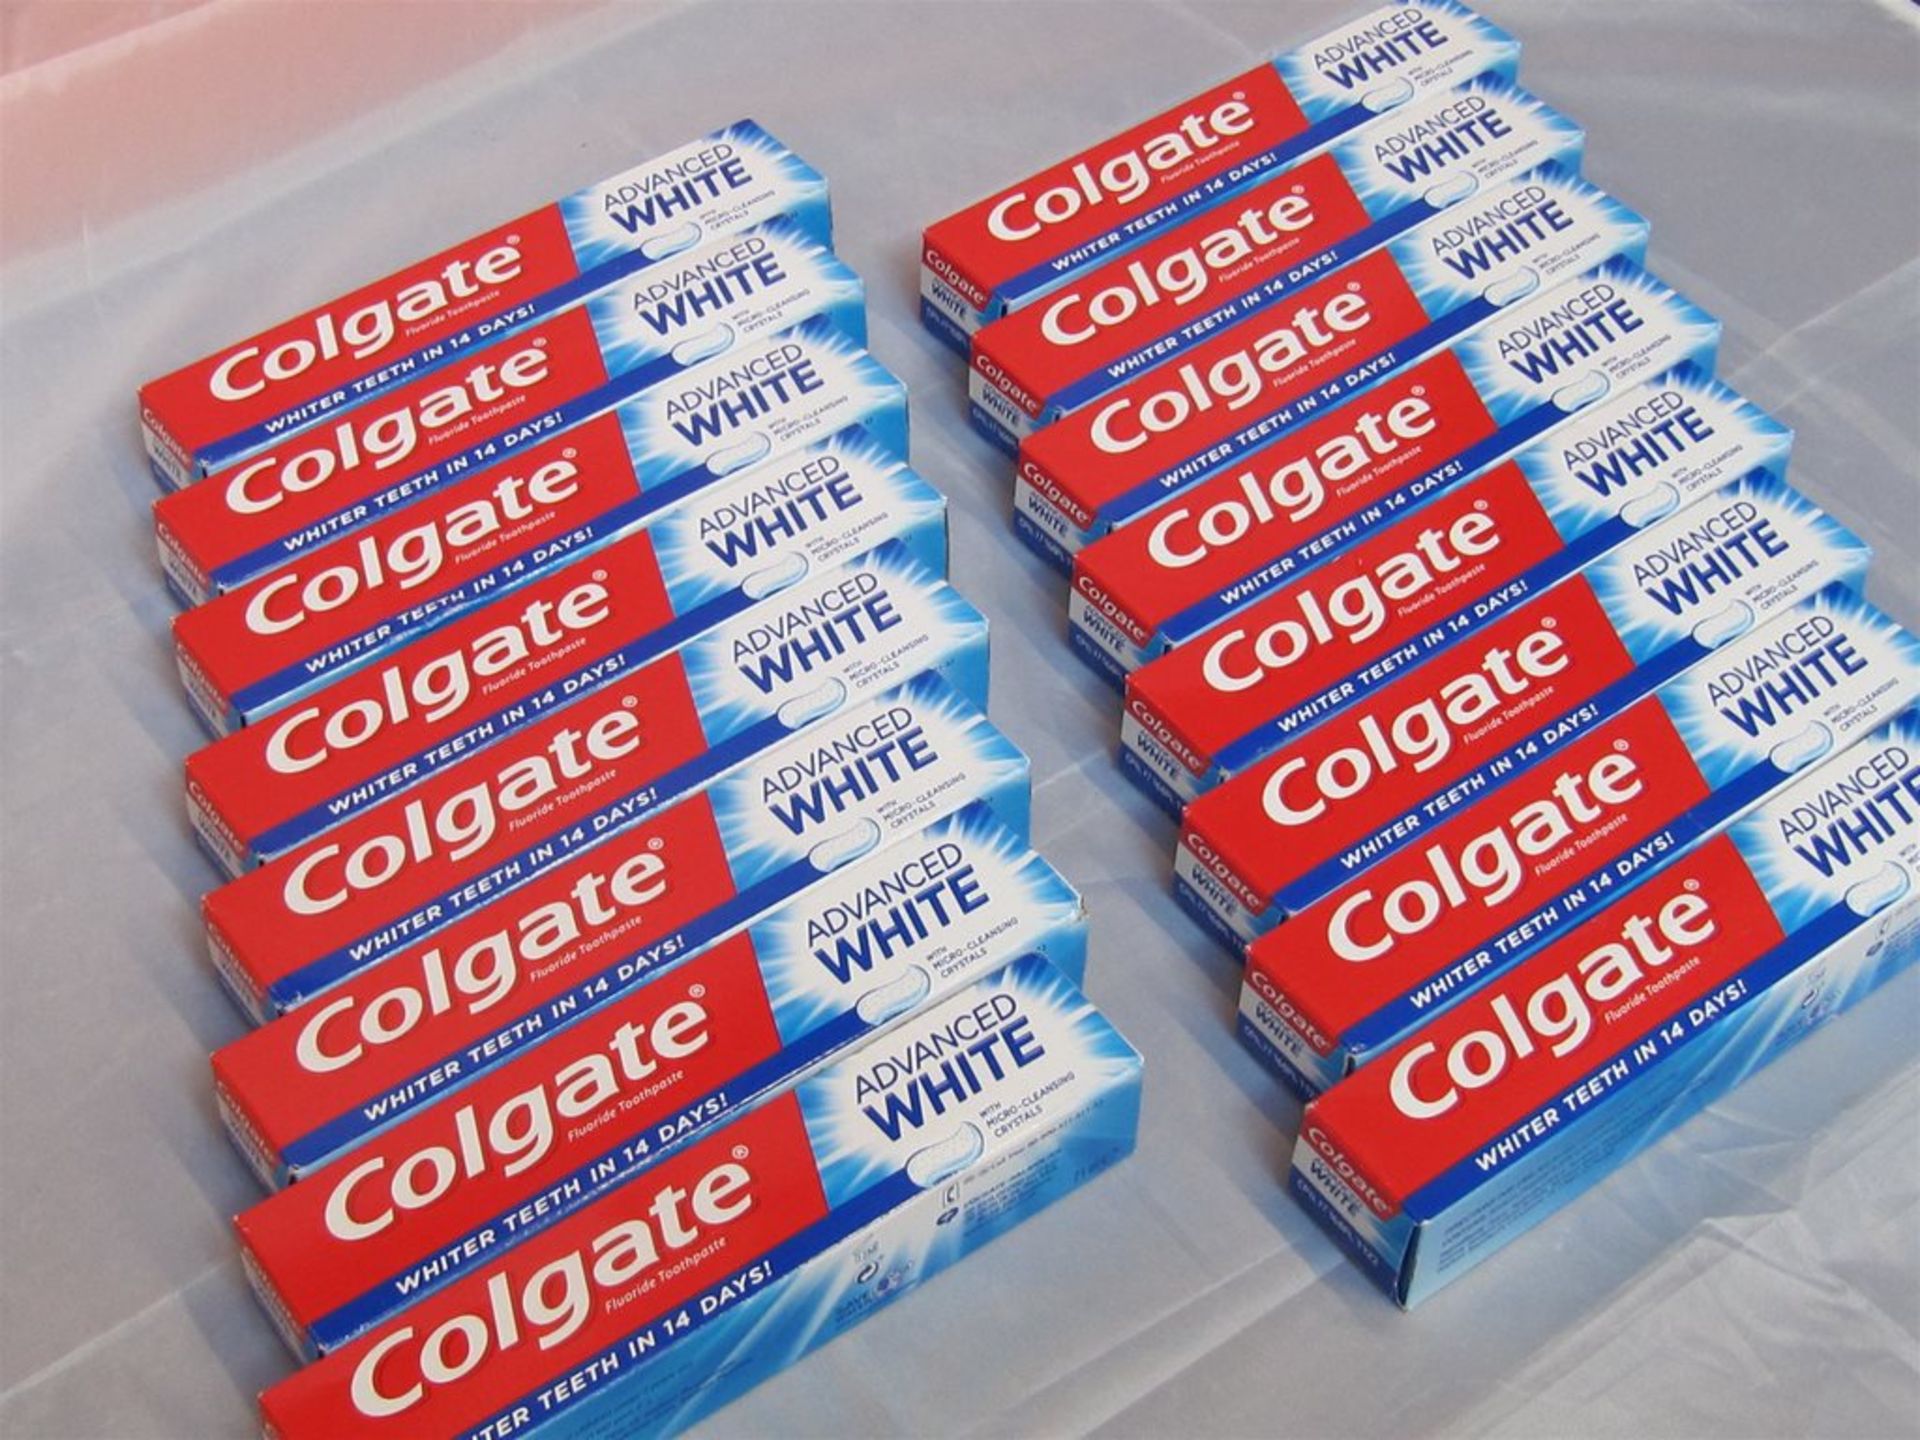 188) 16 x Colgate Fluoride Toothpaste. 75ml each. No vat on Hammer.